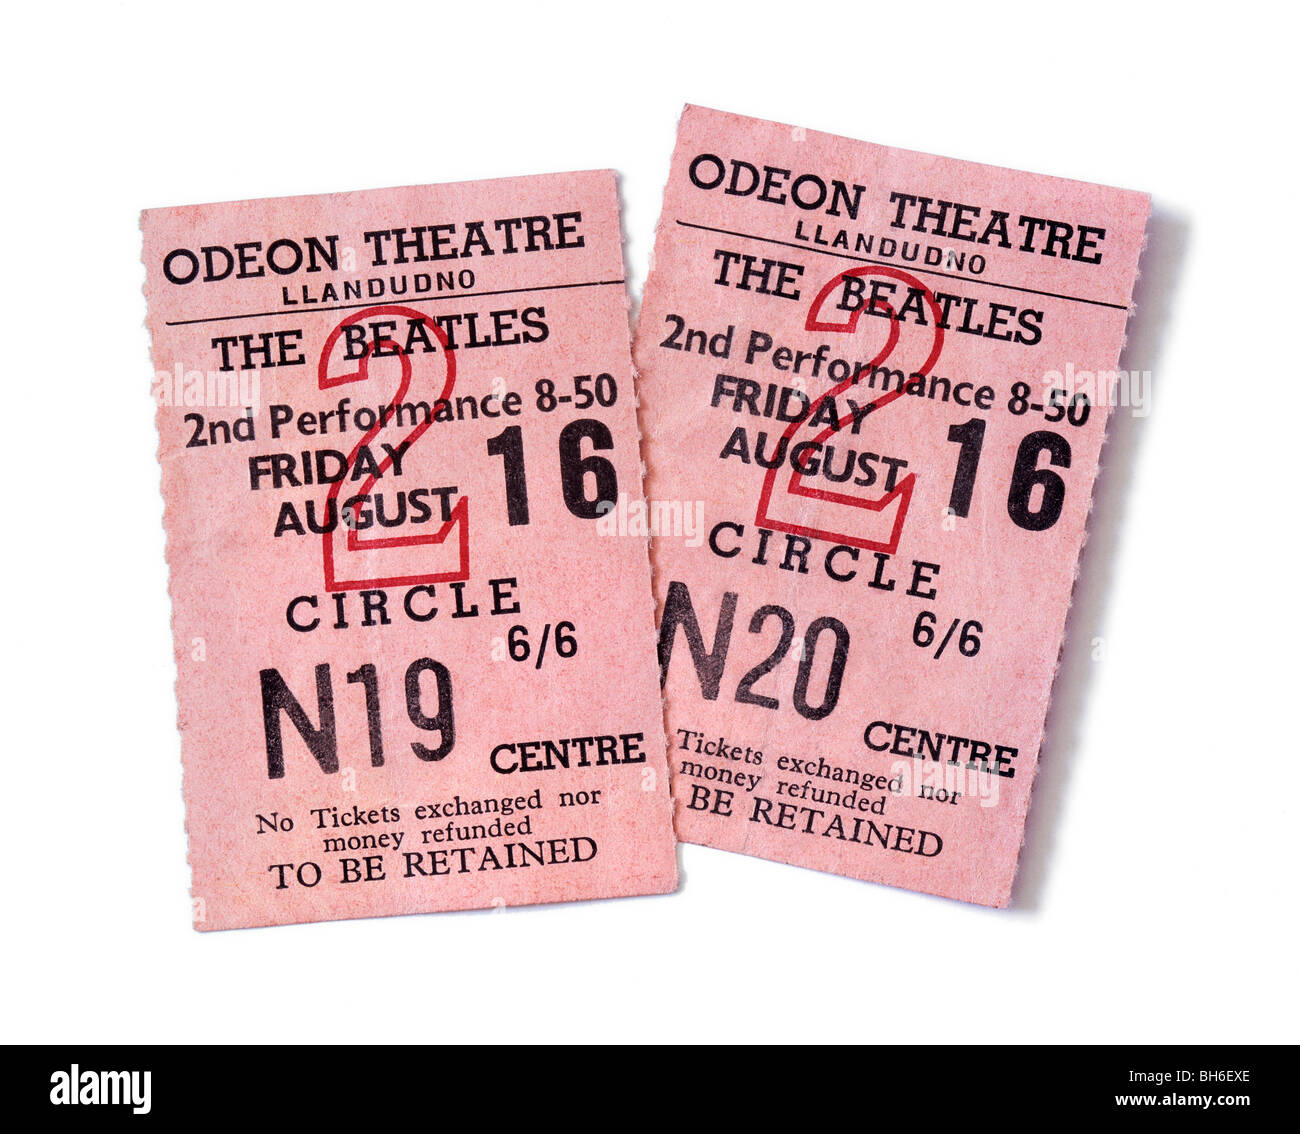 Des billets pour un concert des Beatles au Théâtre de l'Odéon, Llandudno, au nord du Pays de Galles, 16 août 1963 Banque D'Images